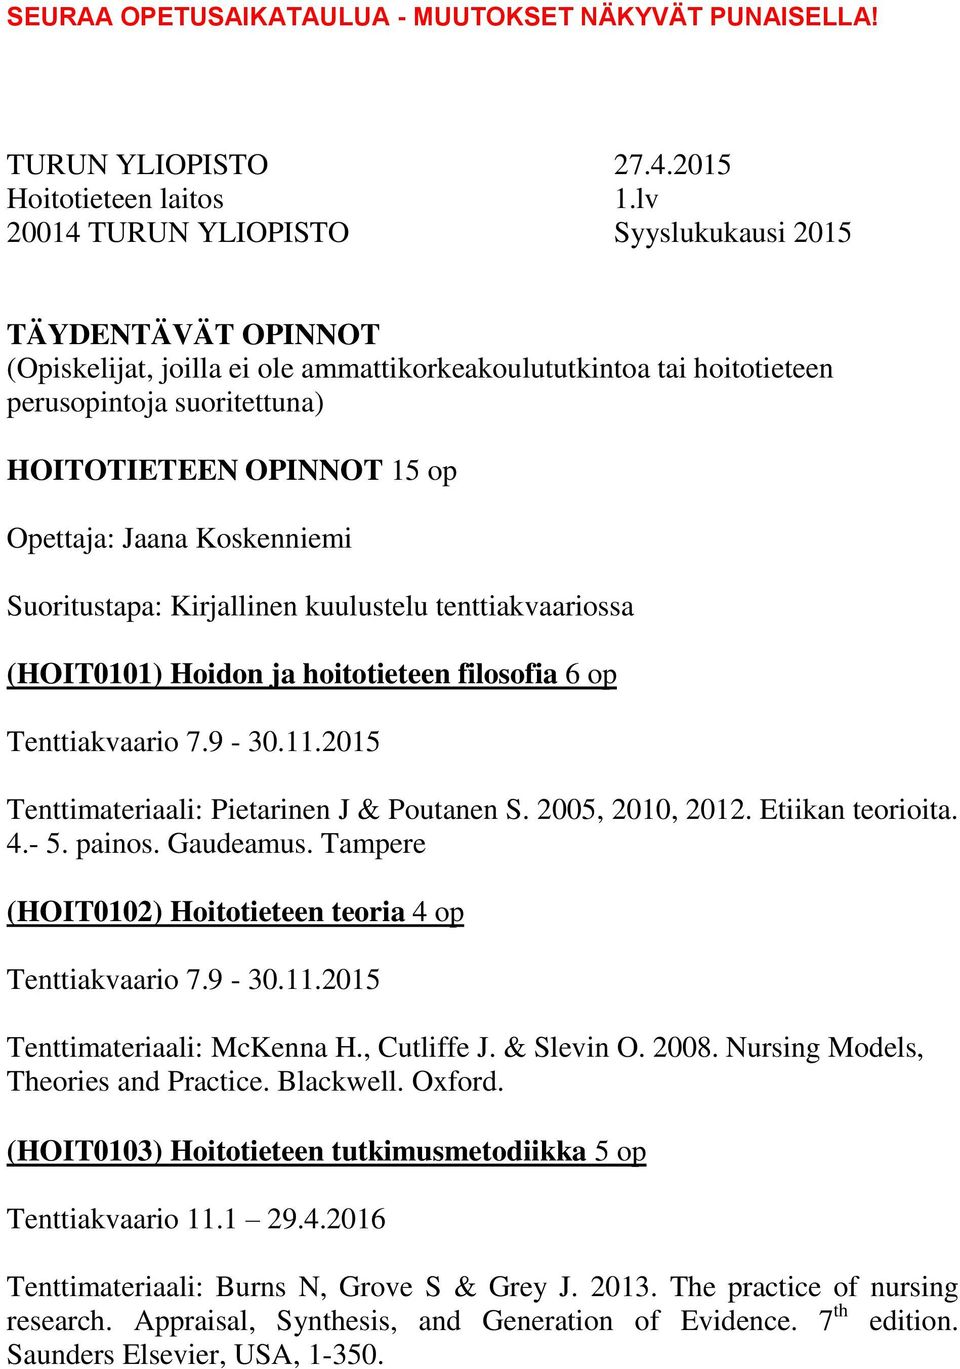 Etiikan teorioita. 4.- 5. painos. Gaudeamus. Tampere (HOIT0102) Hoitotieteen teoria 4 op Tenttiakvaario 7.9-30.11.2015 Tenttimateriaali: McKenna H., Cutliffe J. & Slevin O. 2008.